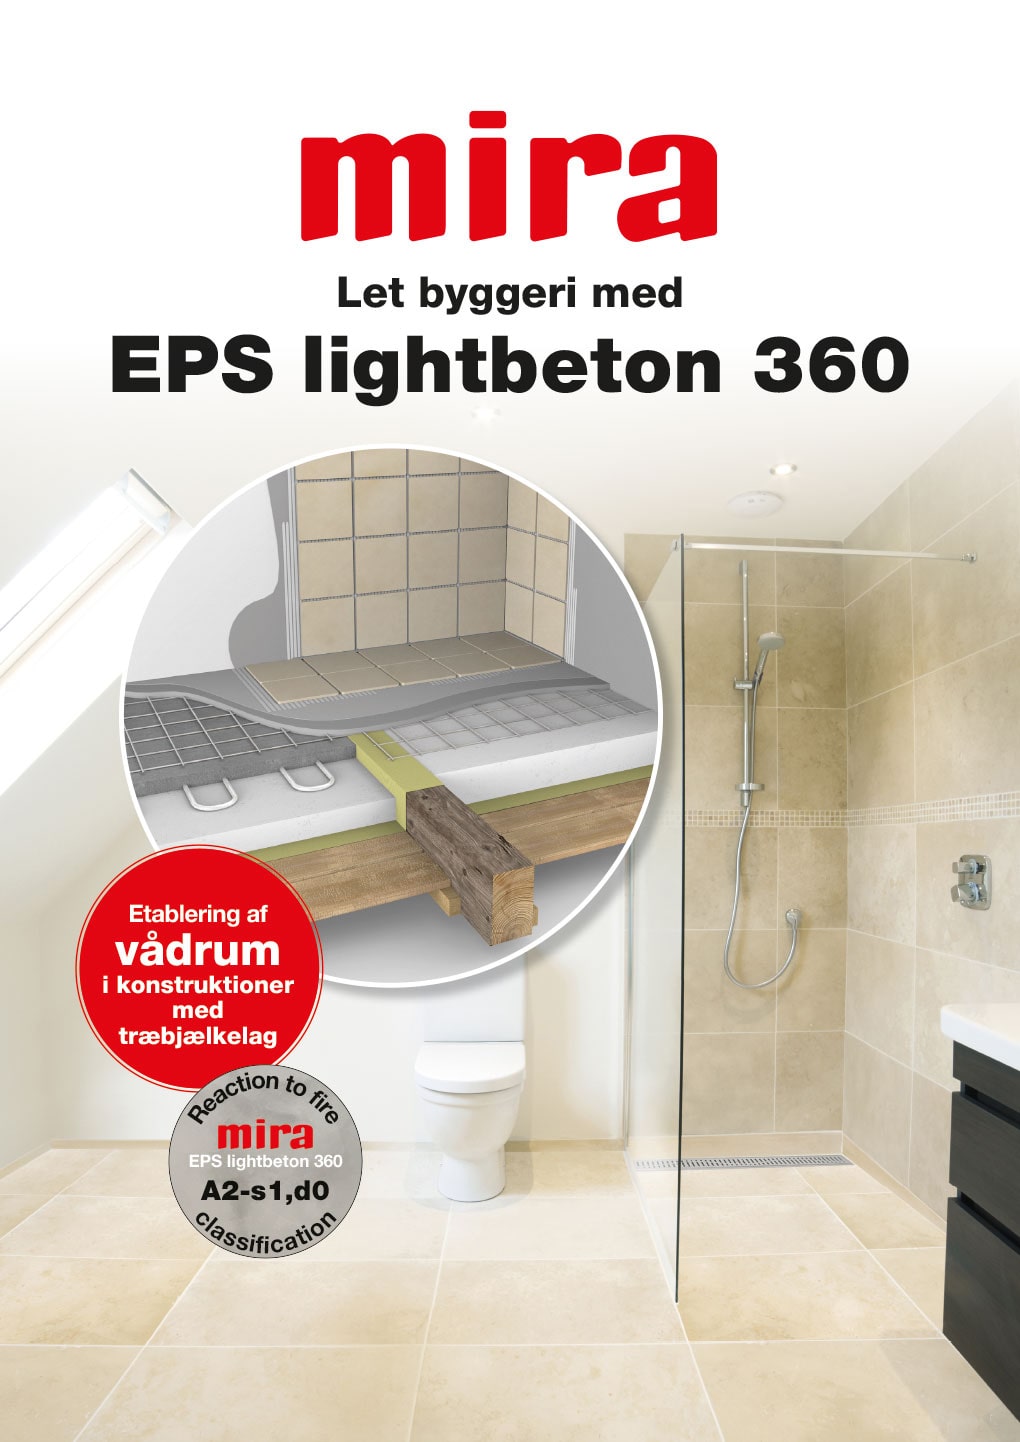 Let byggeri med EPS lightbeton 360 - etablering af vådrum i konstruktioner med træbjælkelag